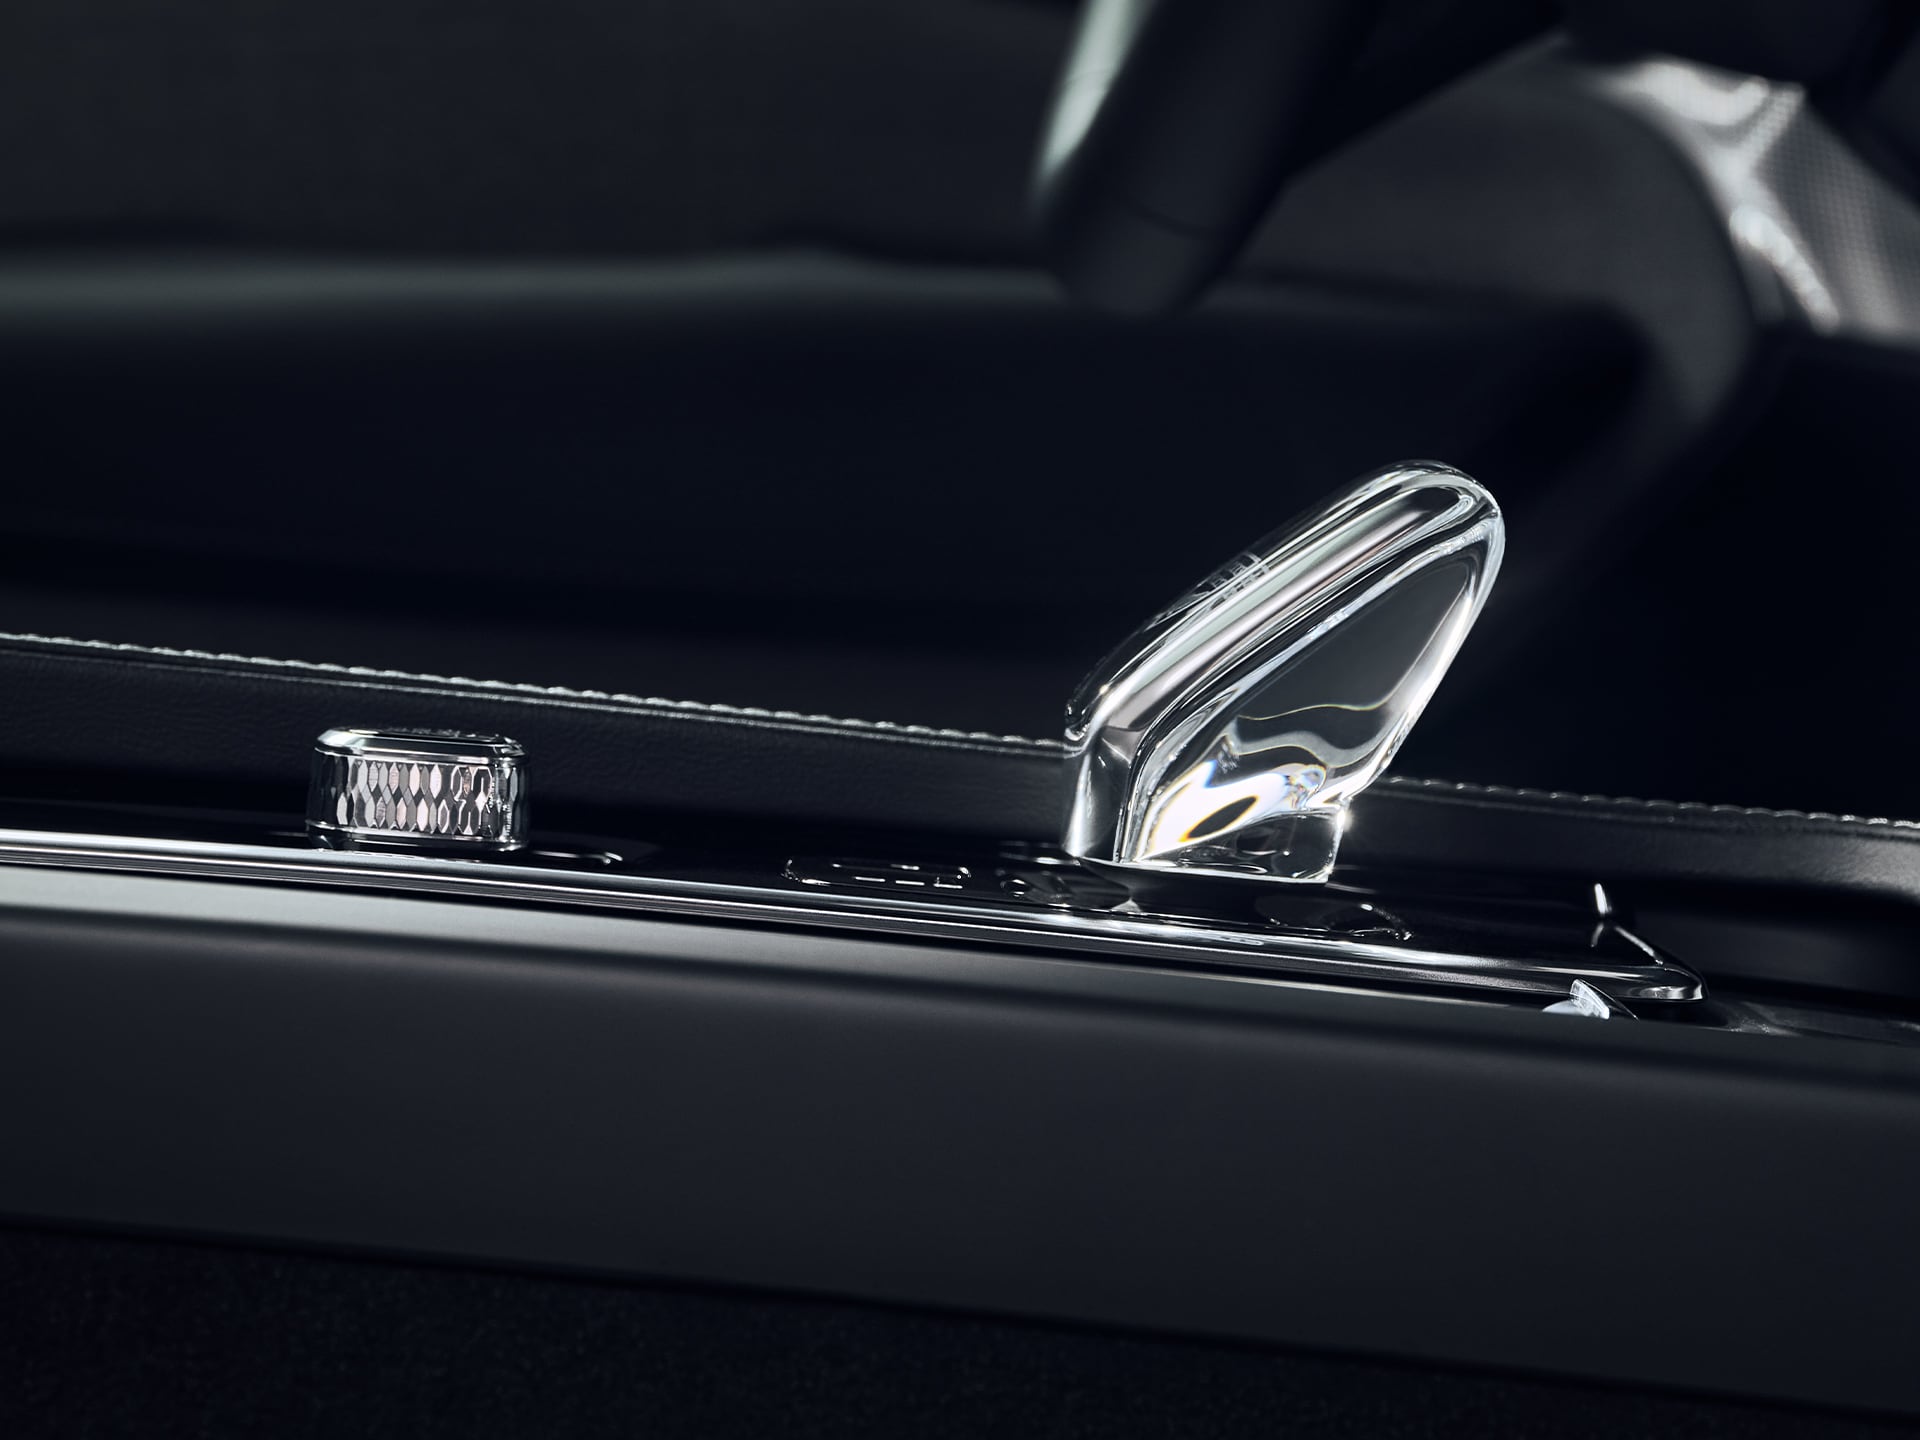 Pulsante di avviamento e selettore marce in cristallo nella console centrale della Volvo XC90 plug-in hybrid.